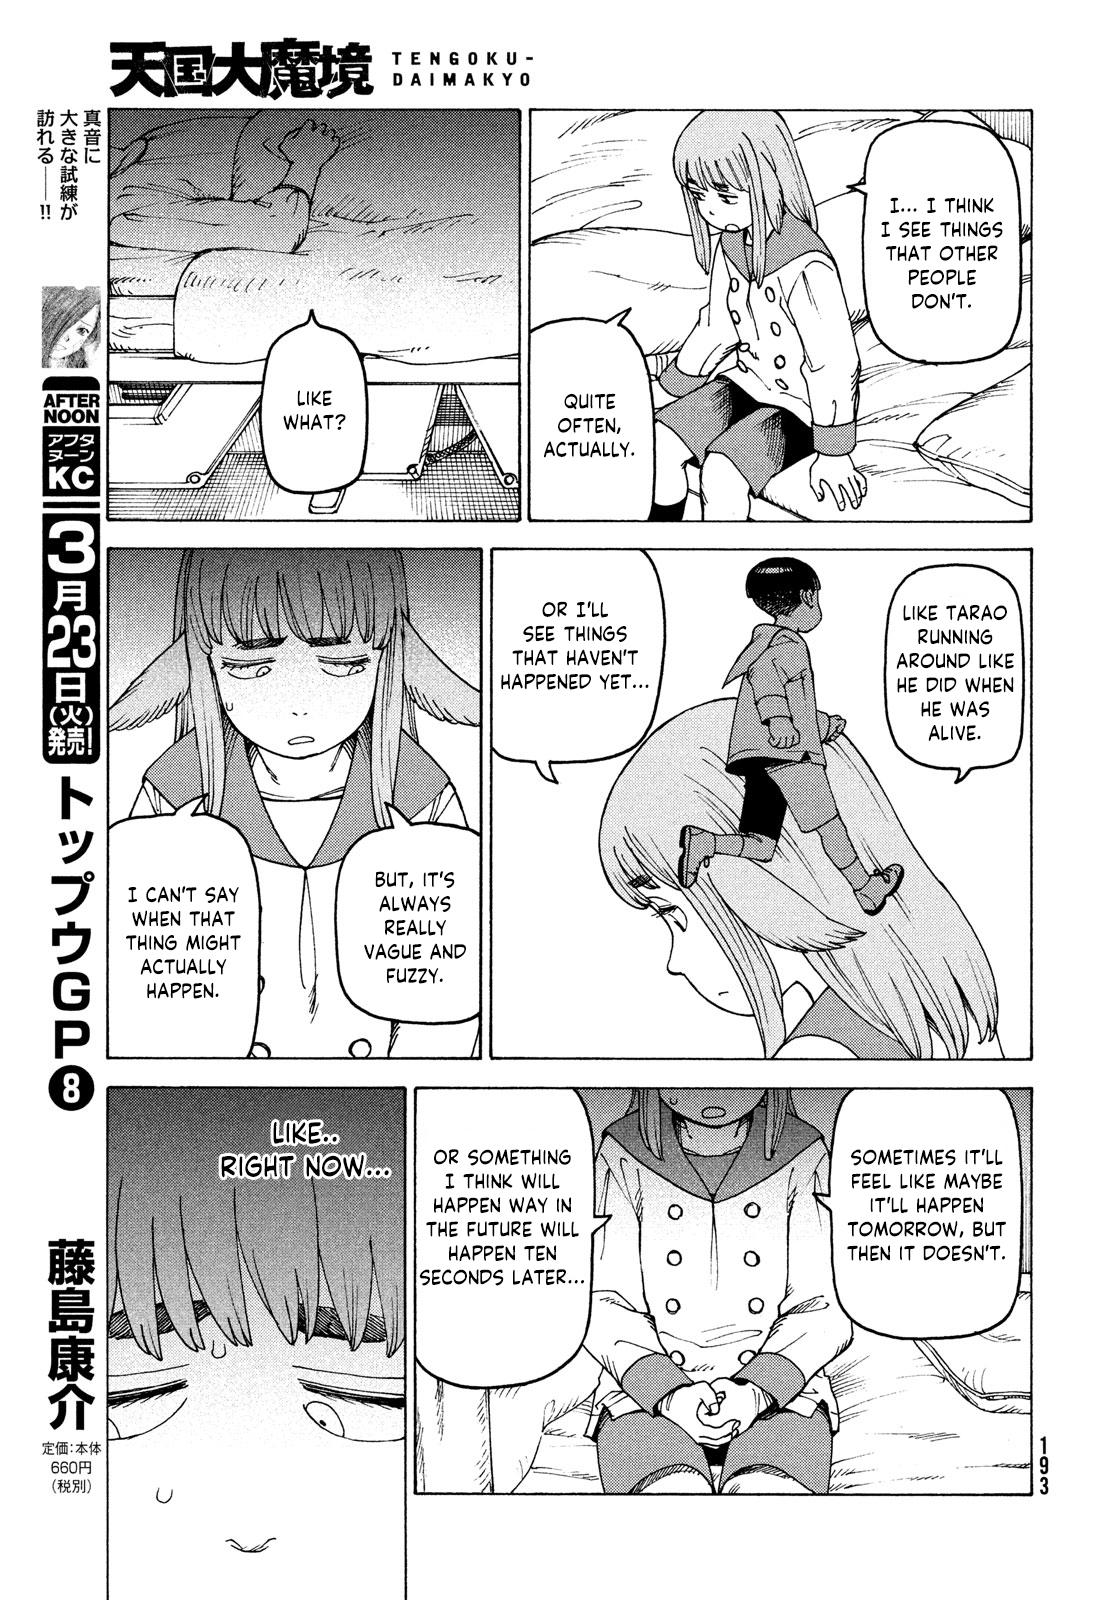 Tengoku Daimakyou Chapter 34: Inazaki Robin ➂ page 9 - Mangakakalot